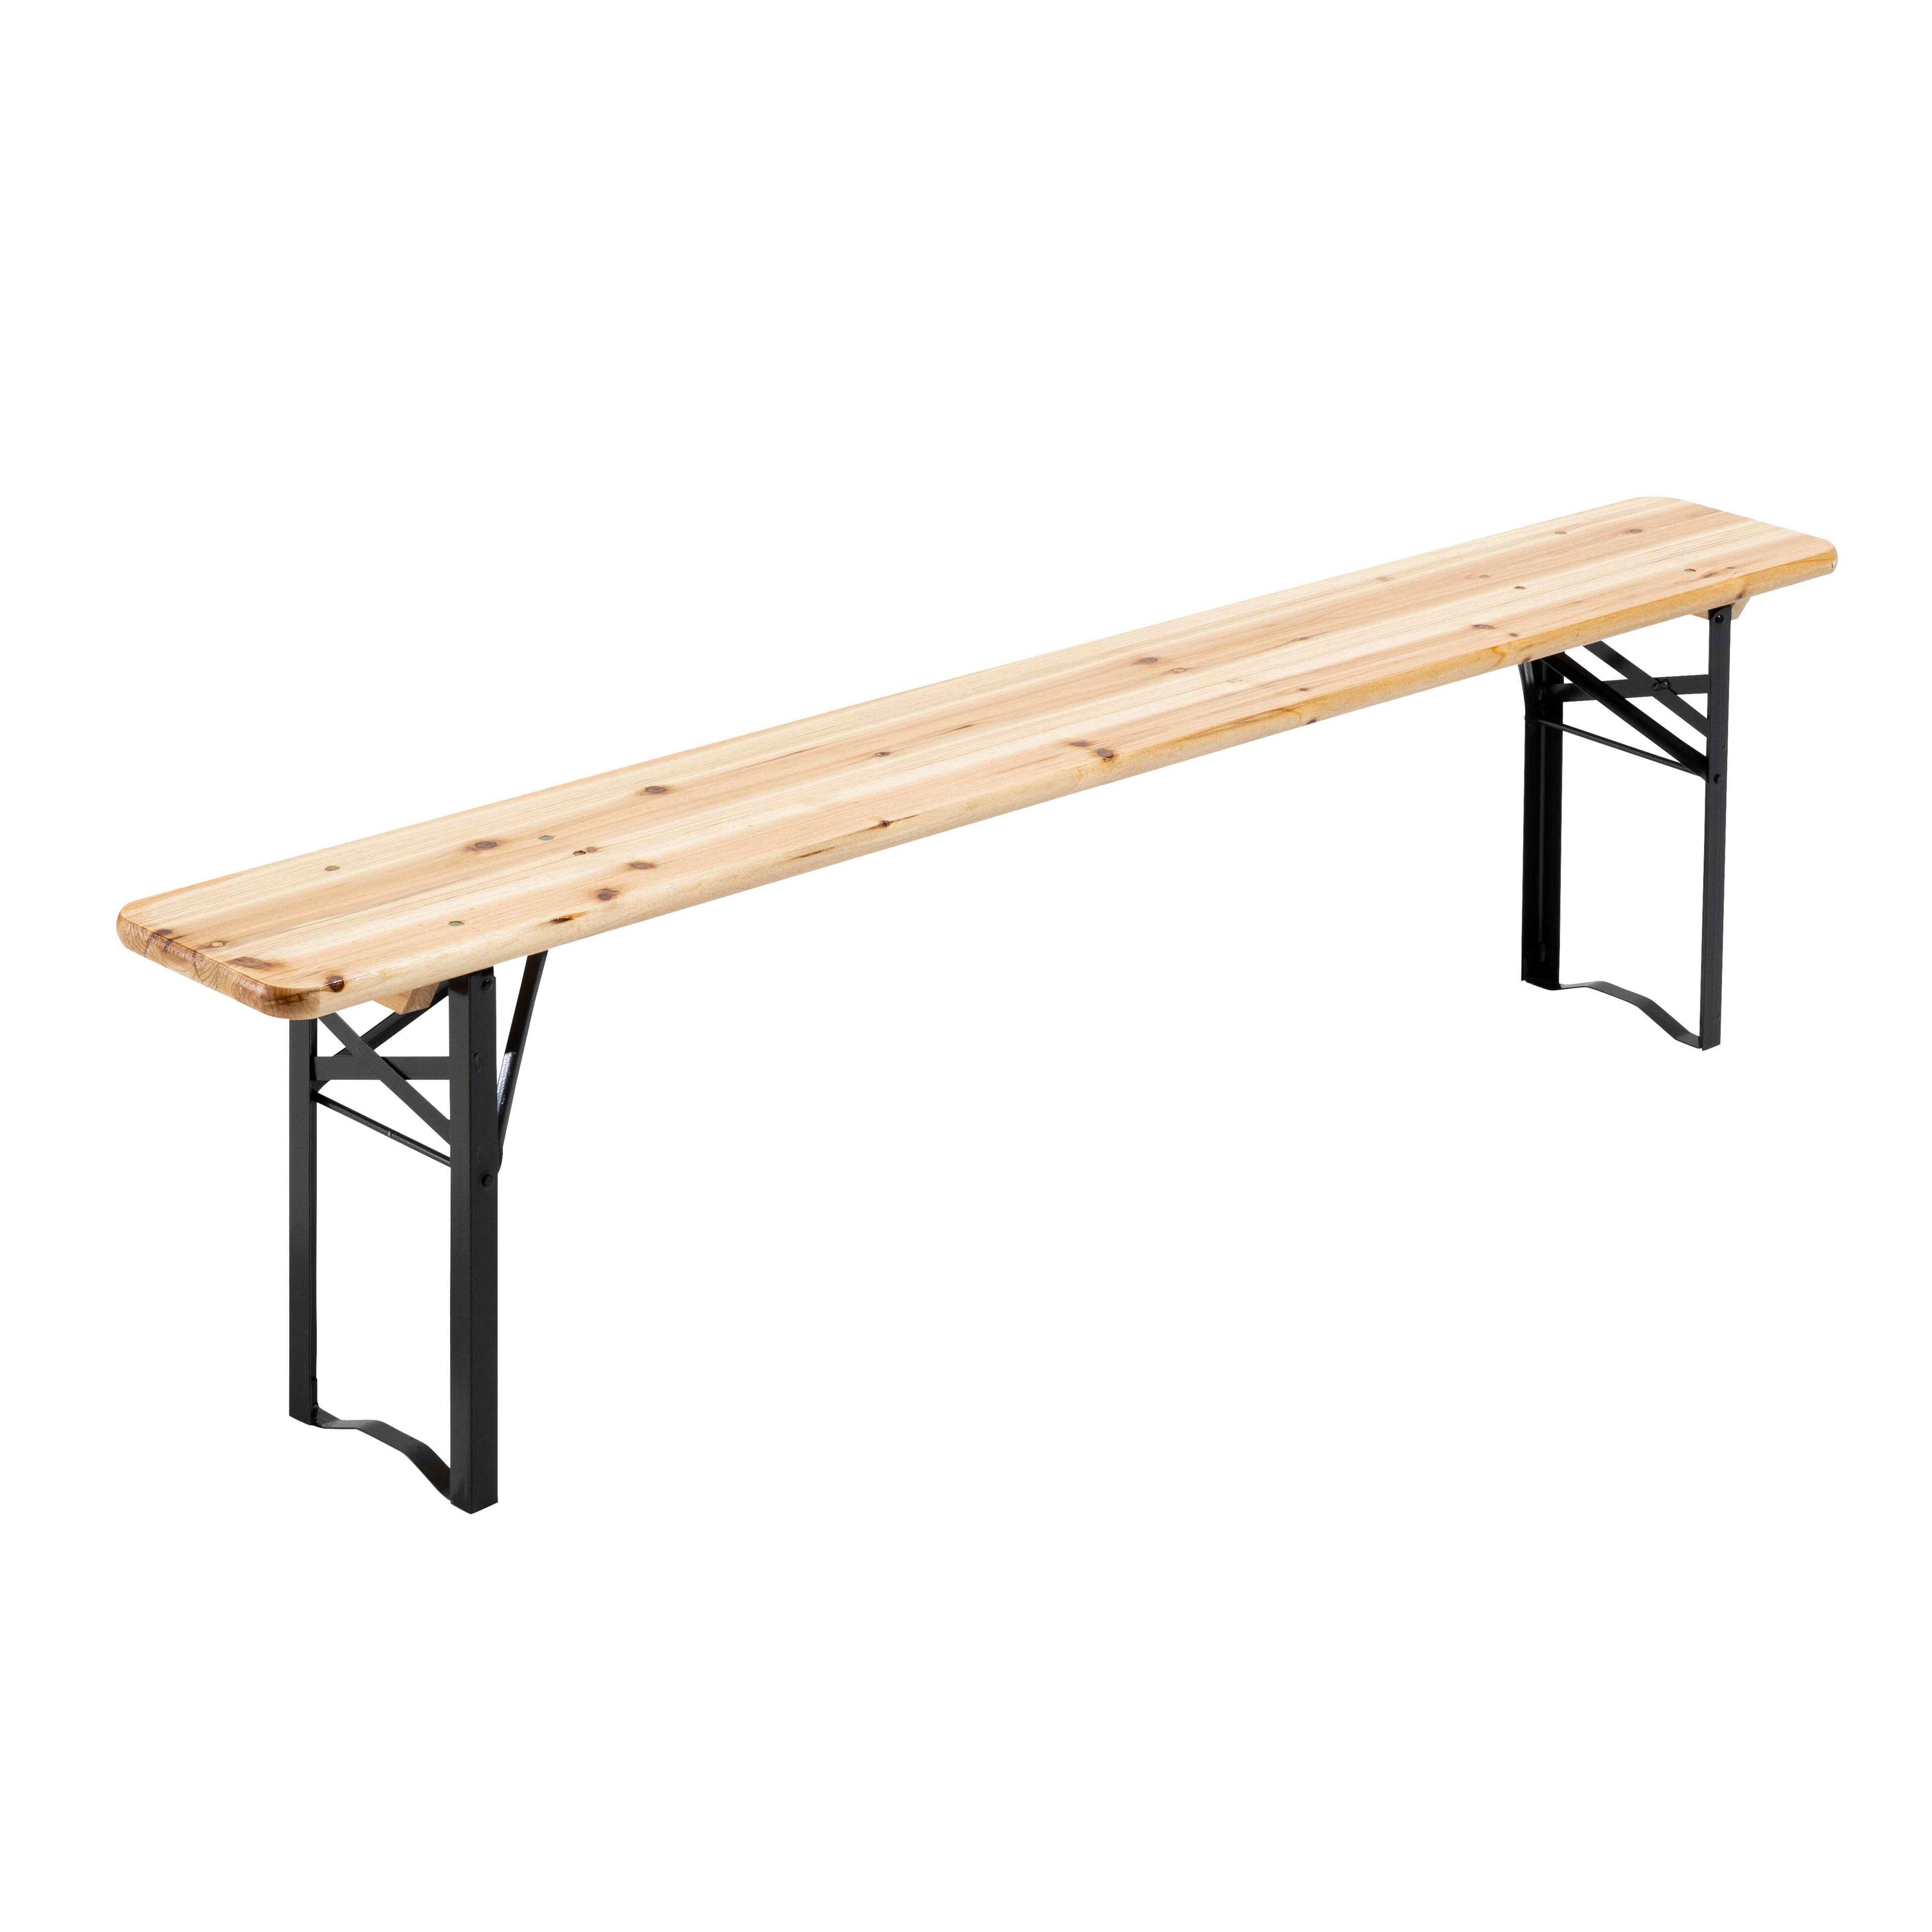 Table de jardin Bistro pliante 60 x 180 cm+ 2 bancs pliants 25 x 180 cm